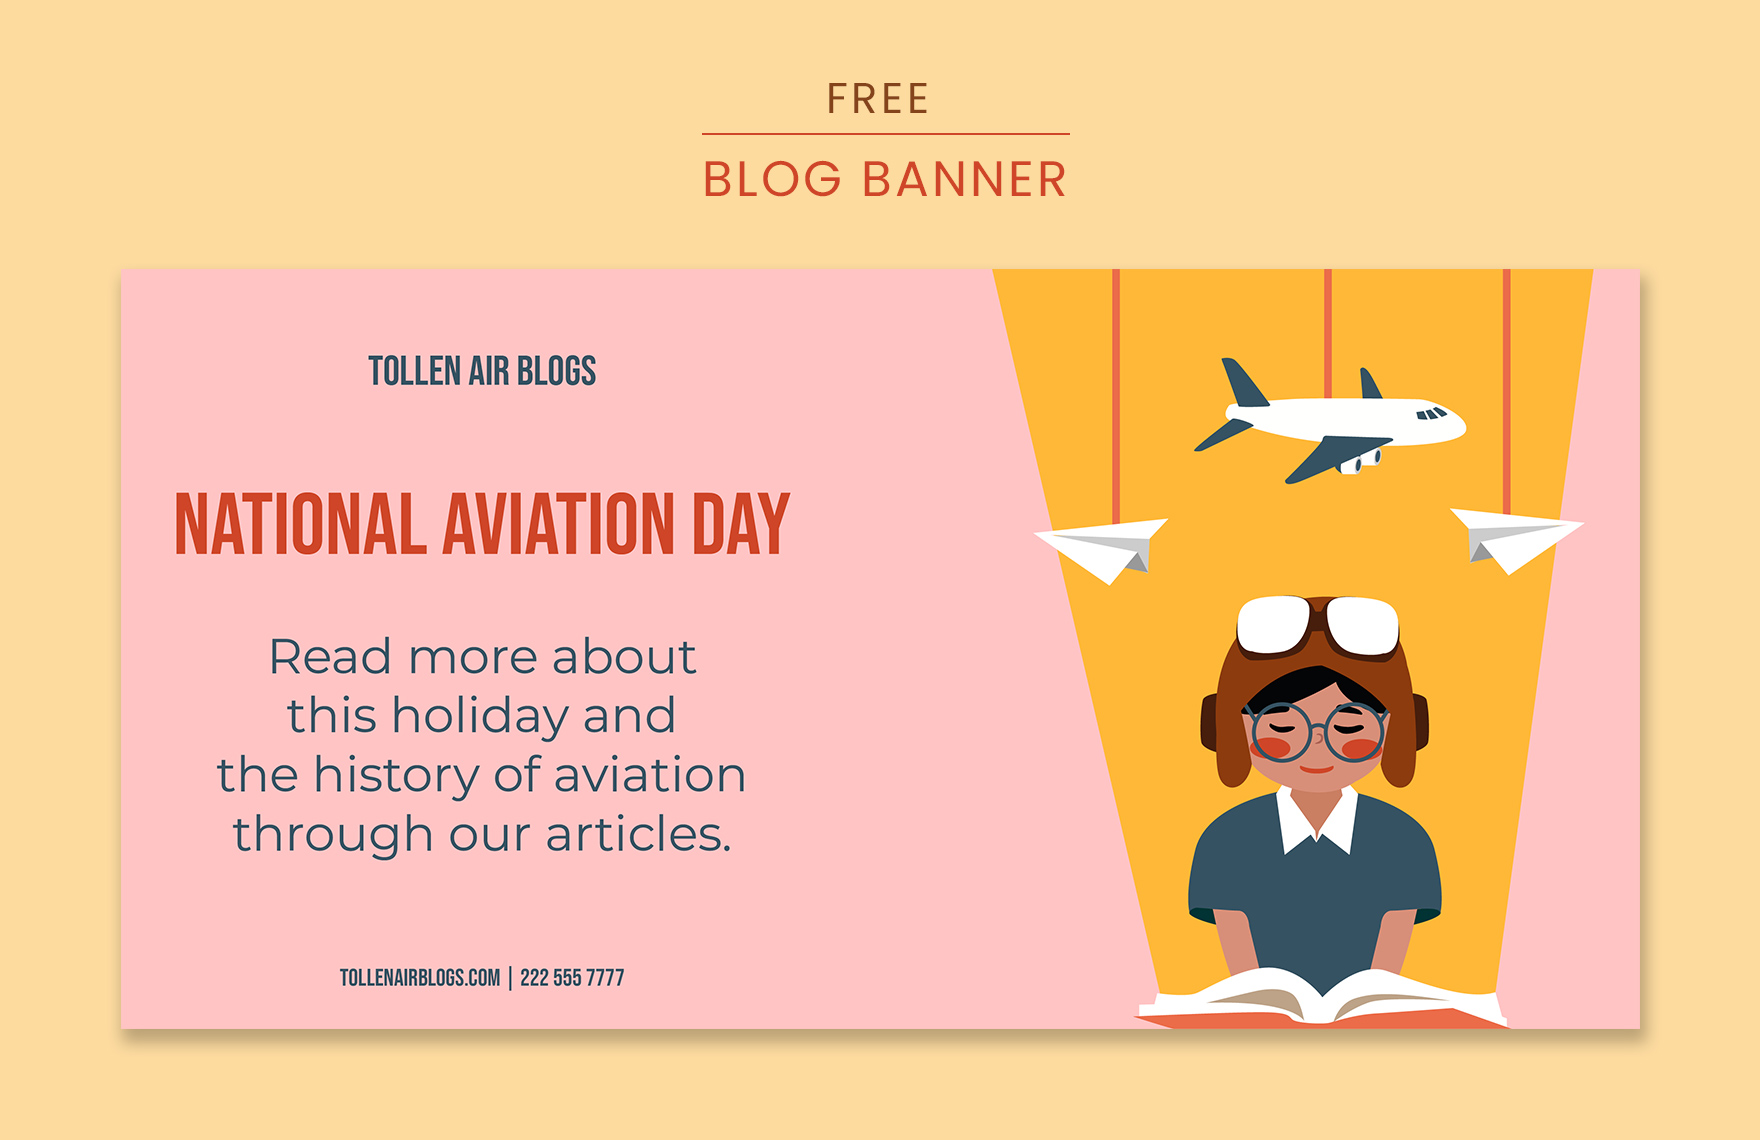 National Aviation Day Blog Banner Template in PDF, Illustrator, SVG, JPEG